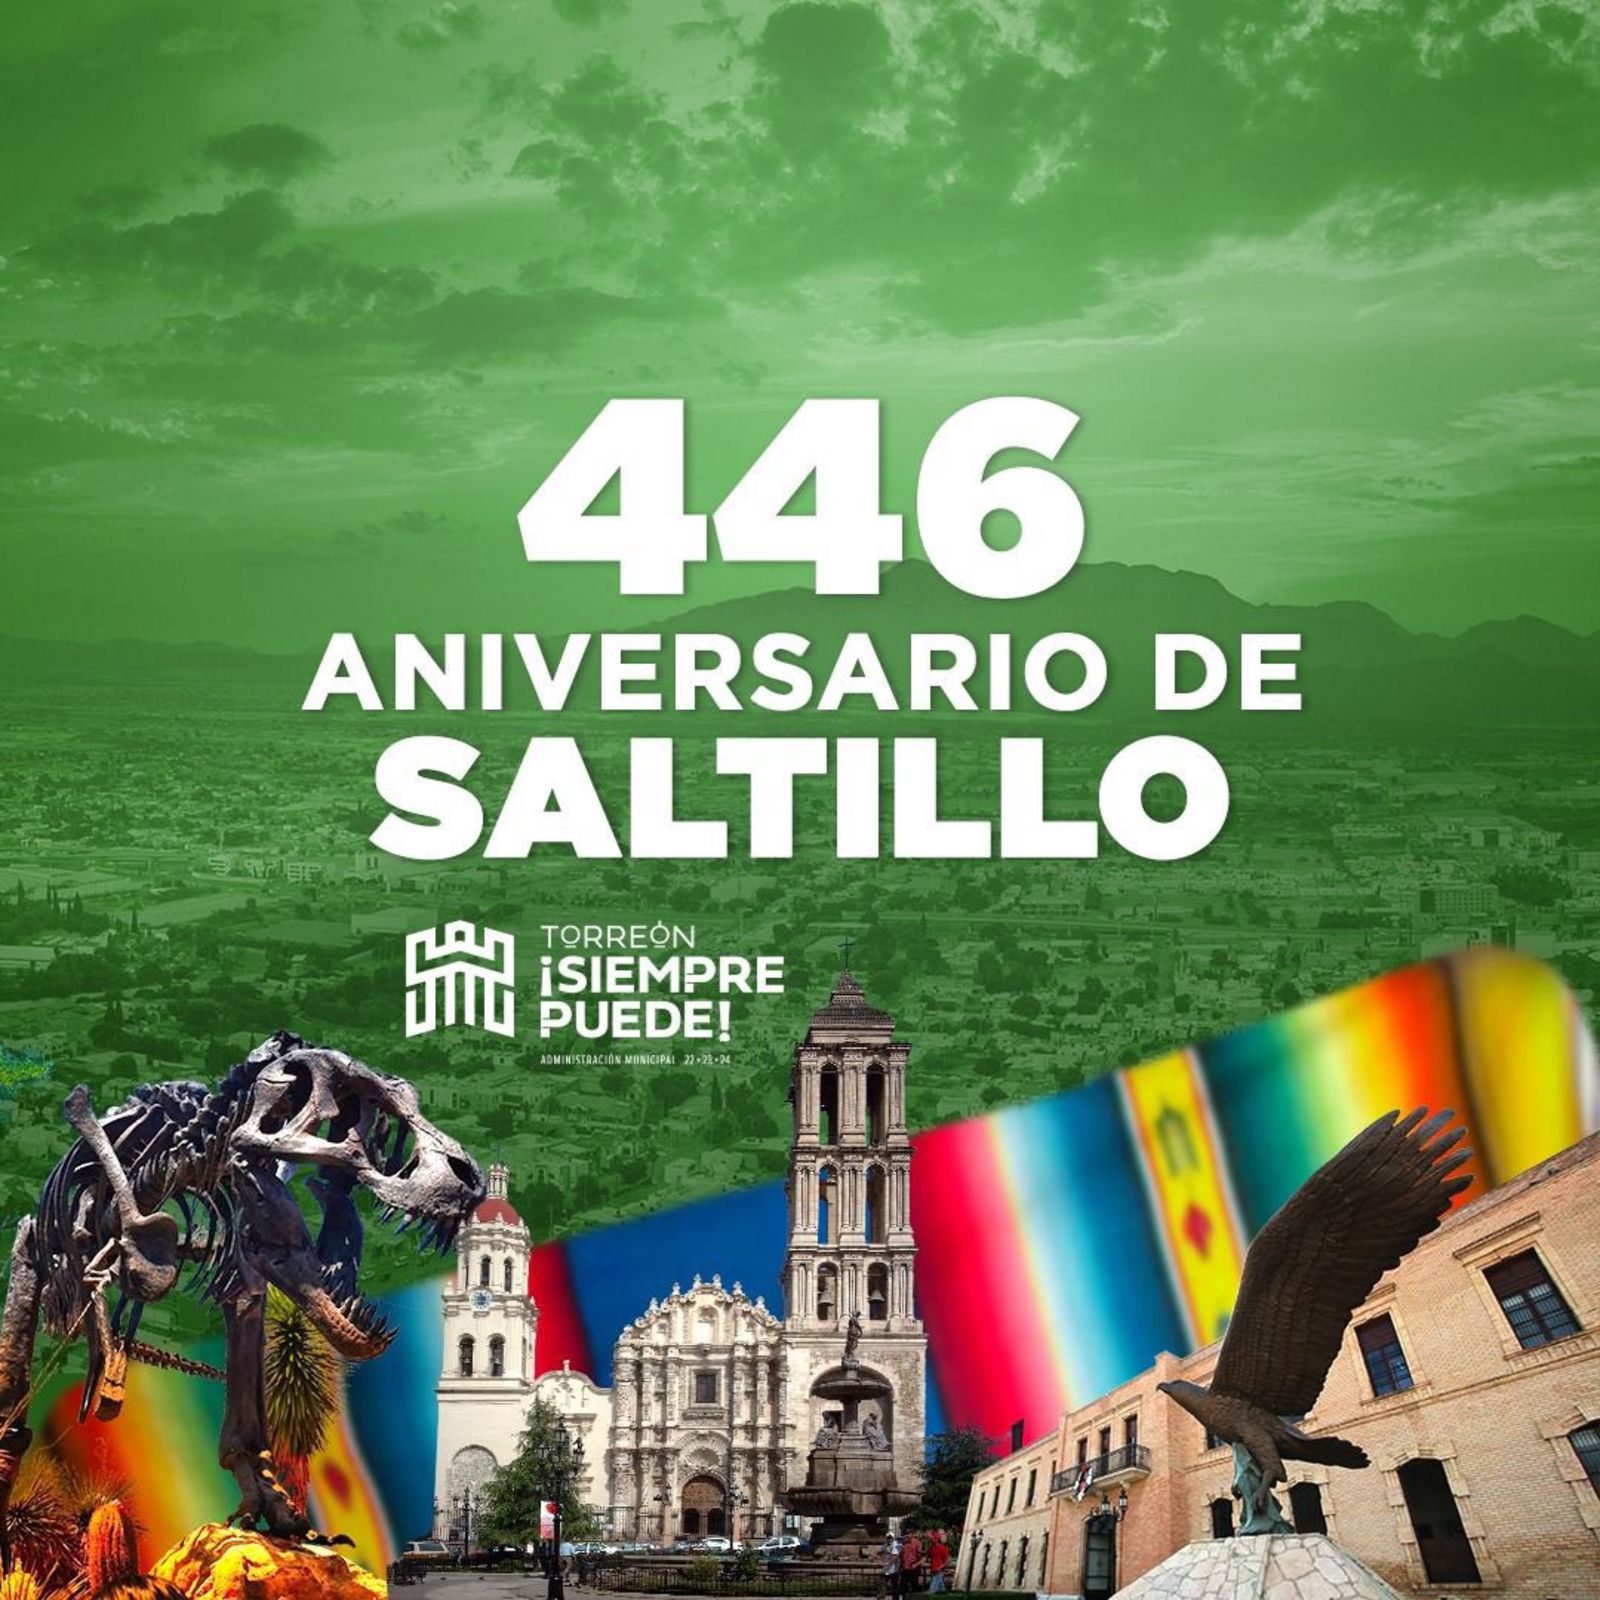 Saltillo: 446 aniversario y en su mejor momento